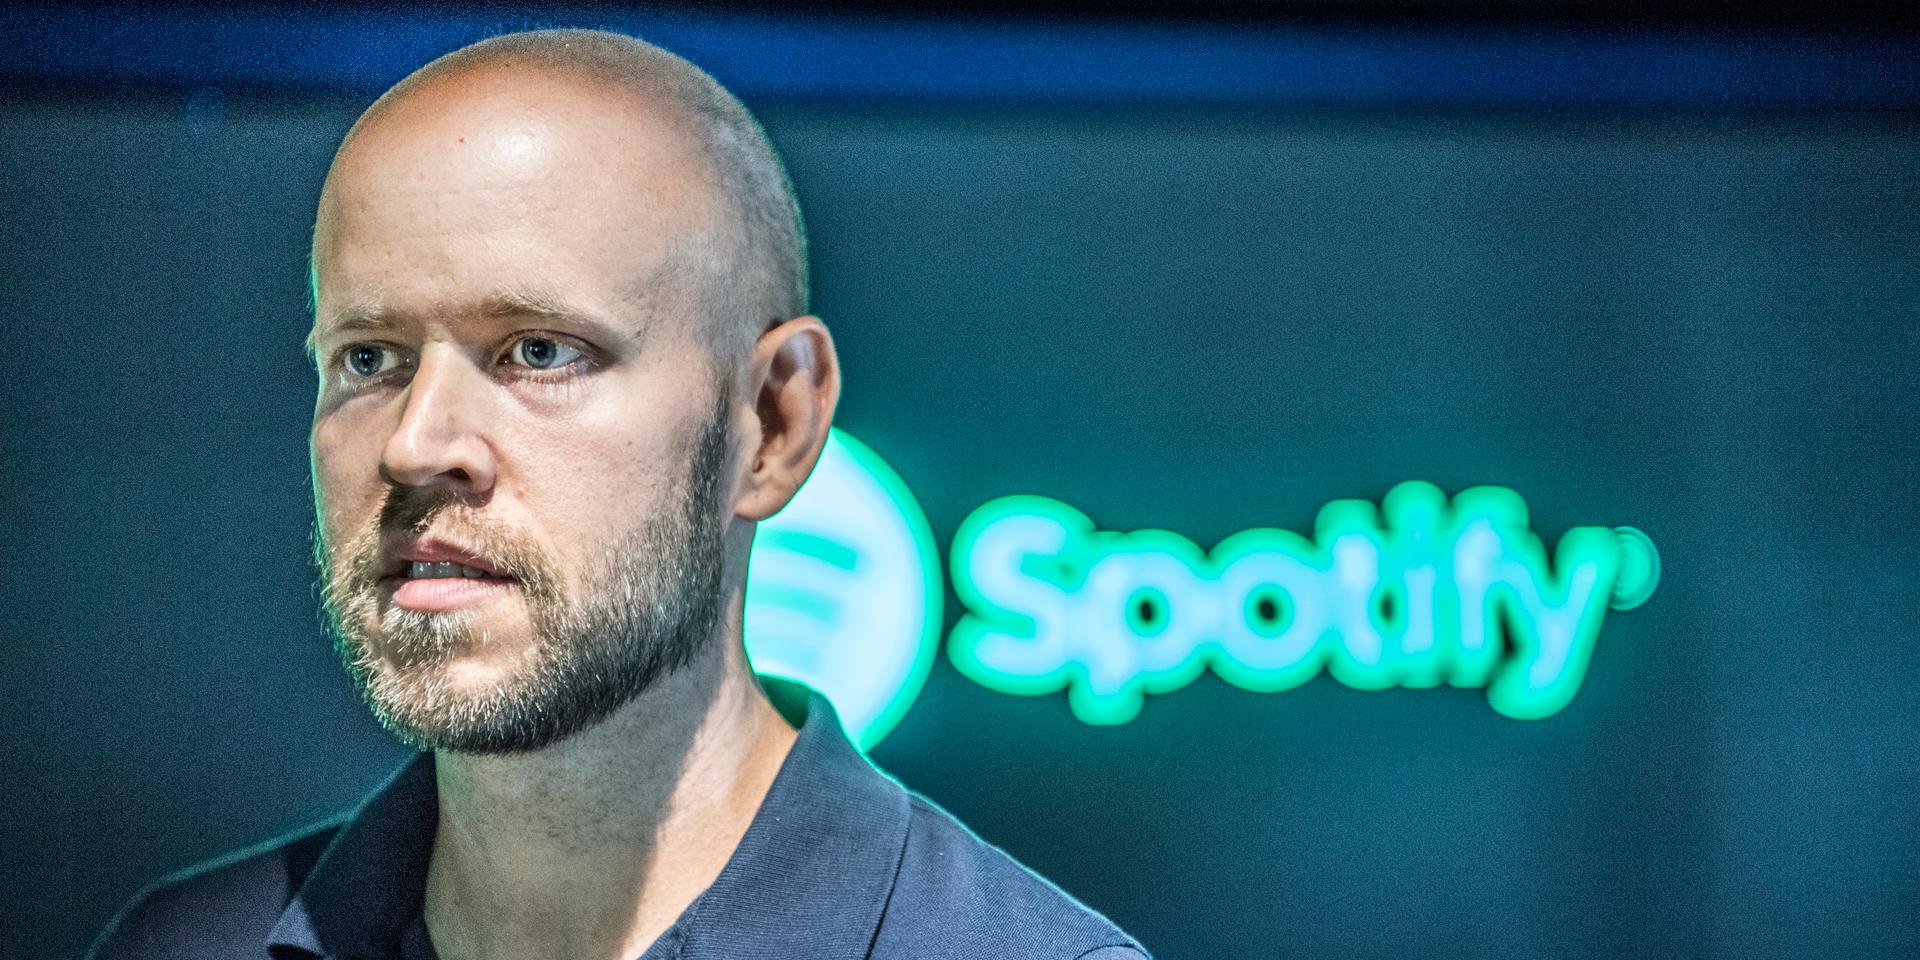 Daniel Ek är grundare till musiktjänsten Spotify.